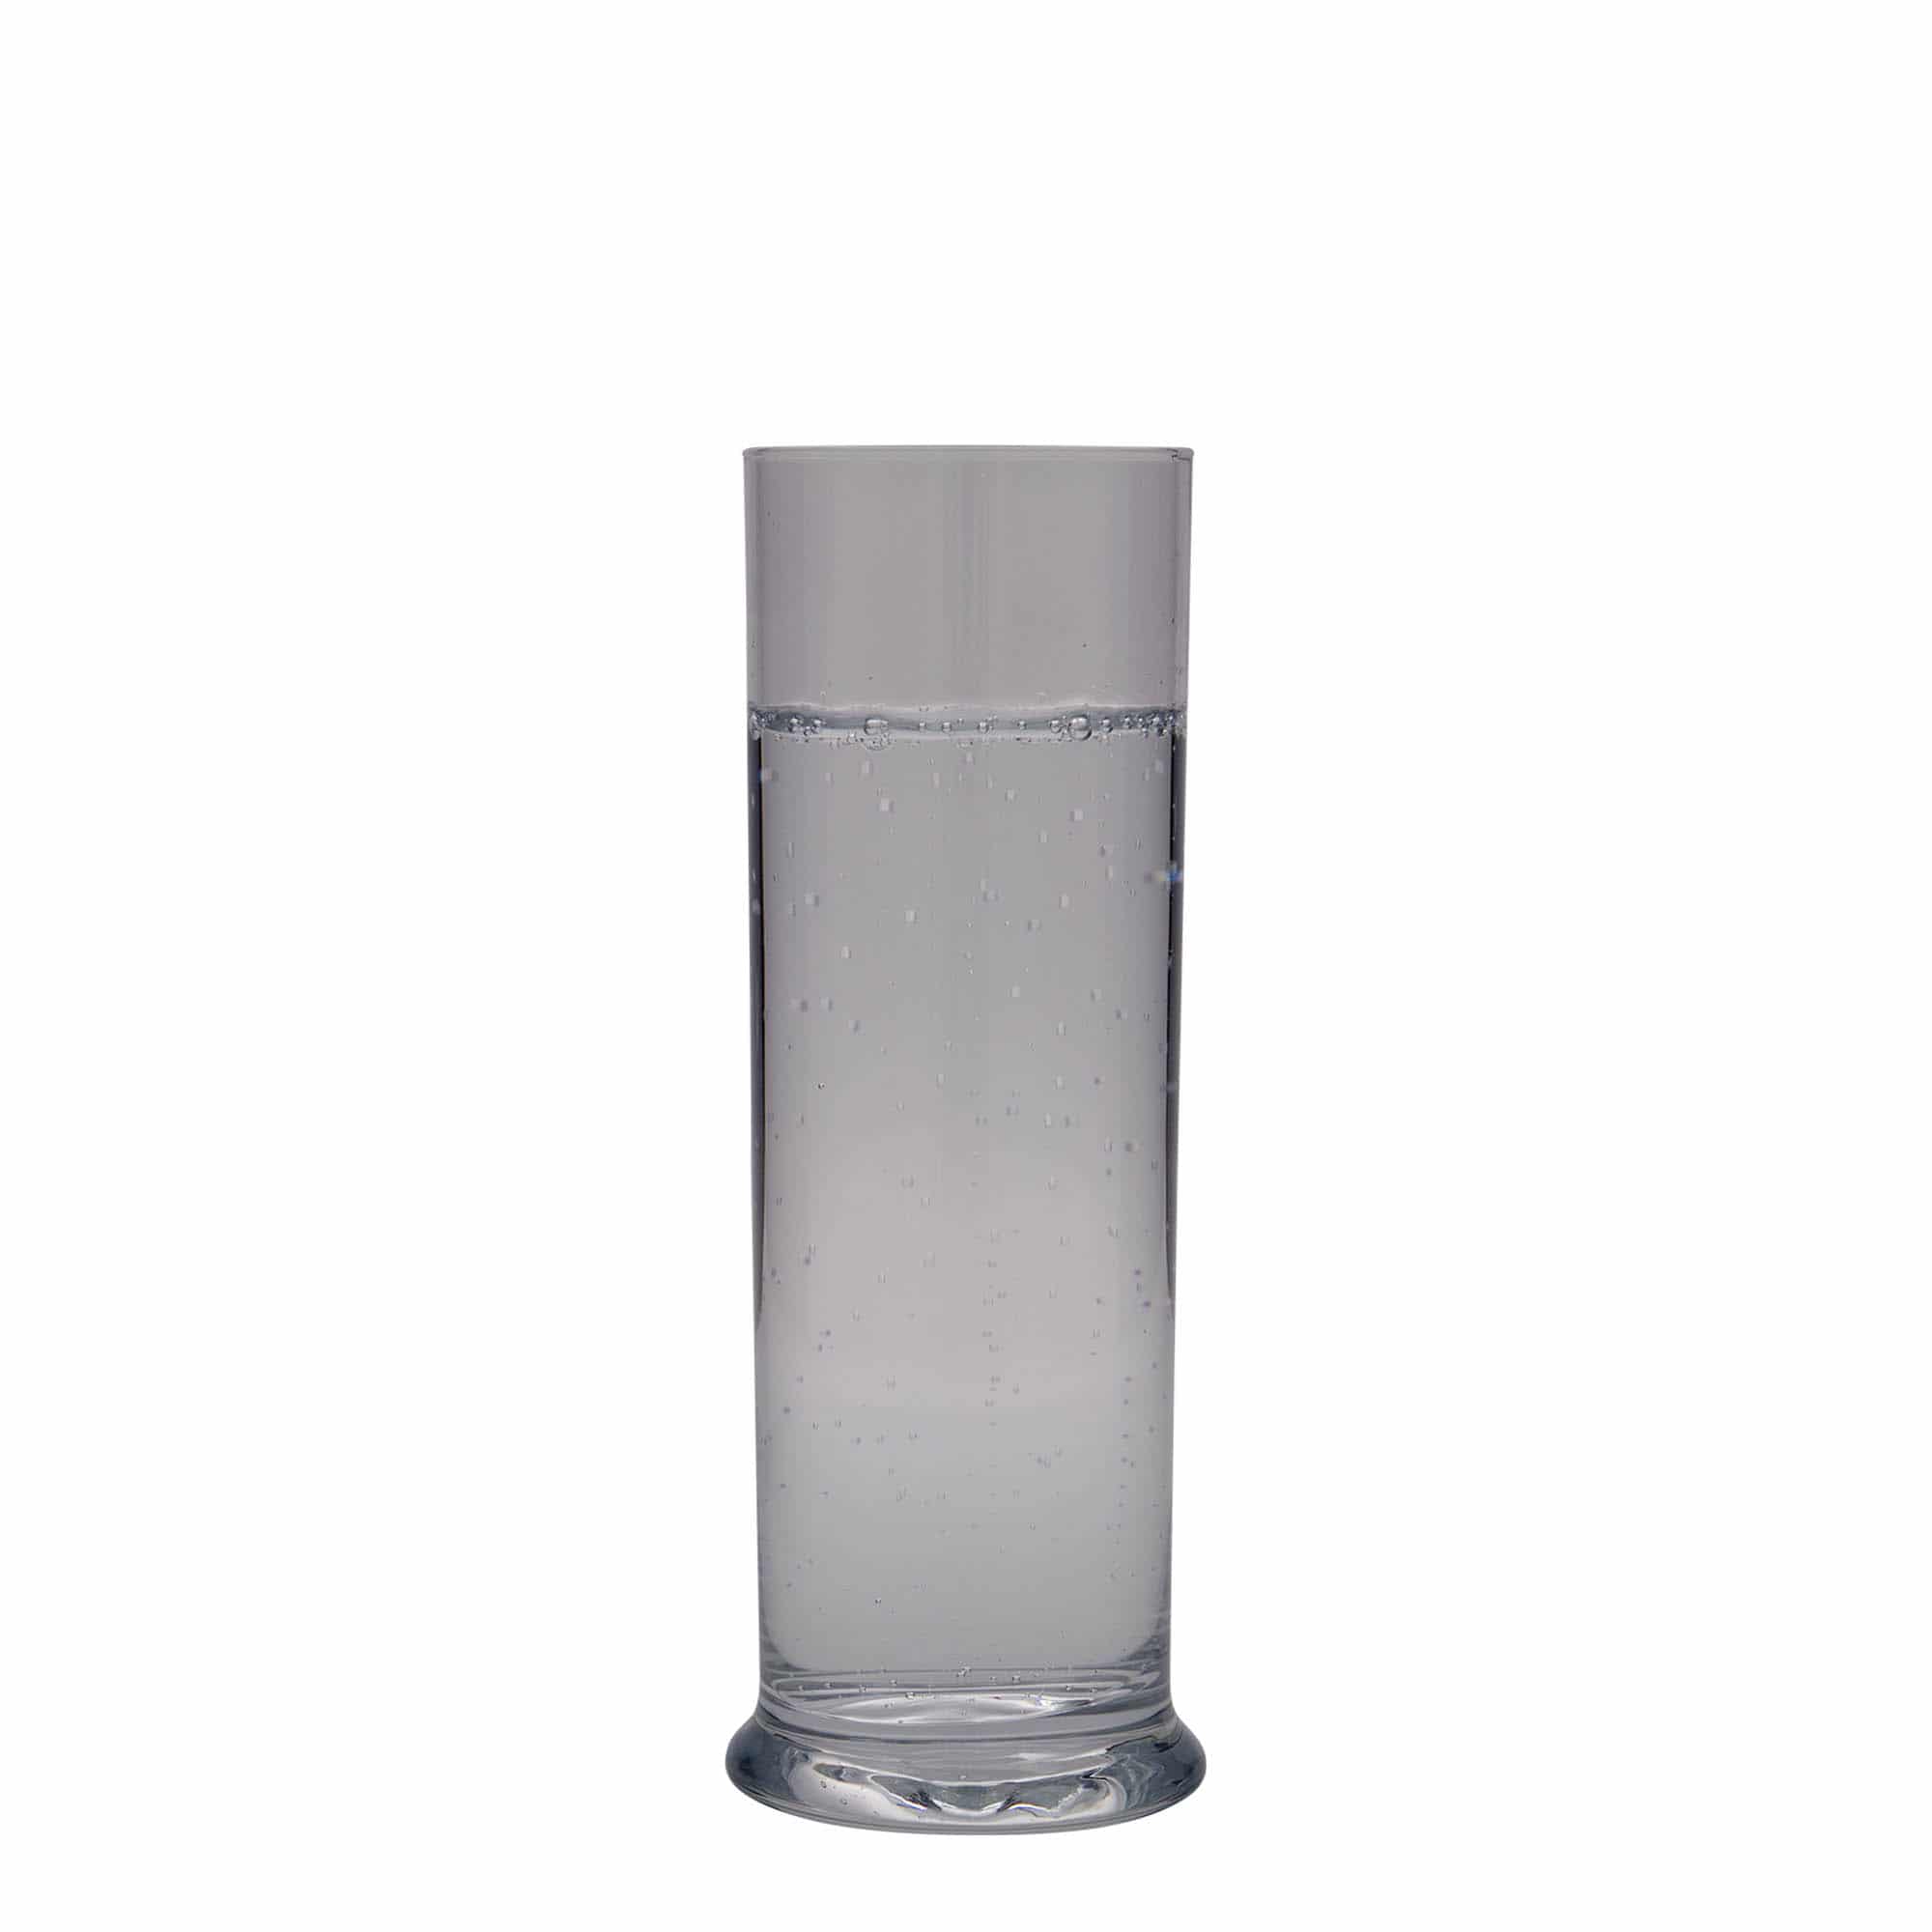 300 ml longdrink-glas 'Club', glas